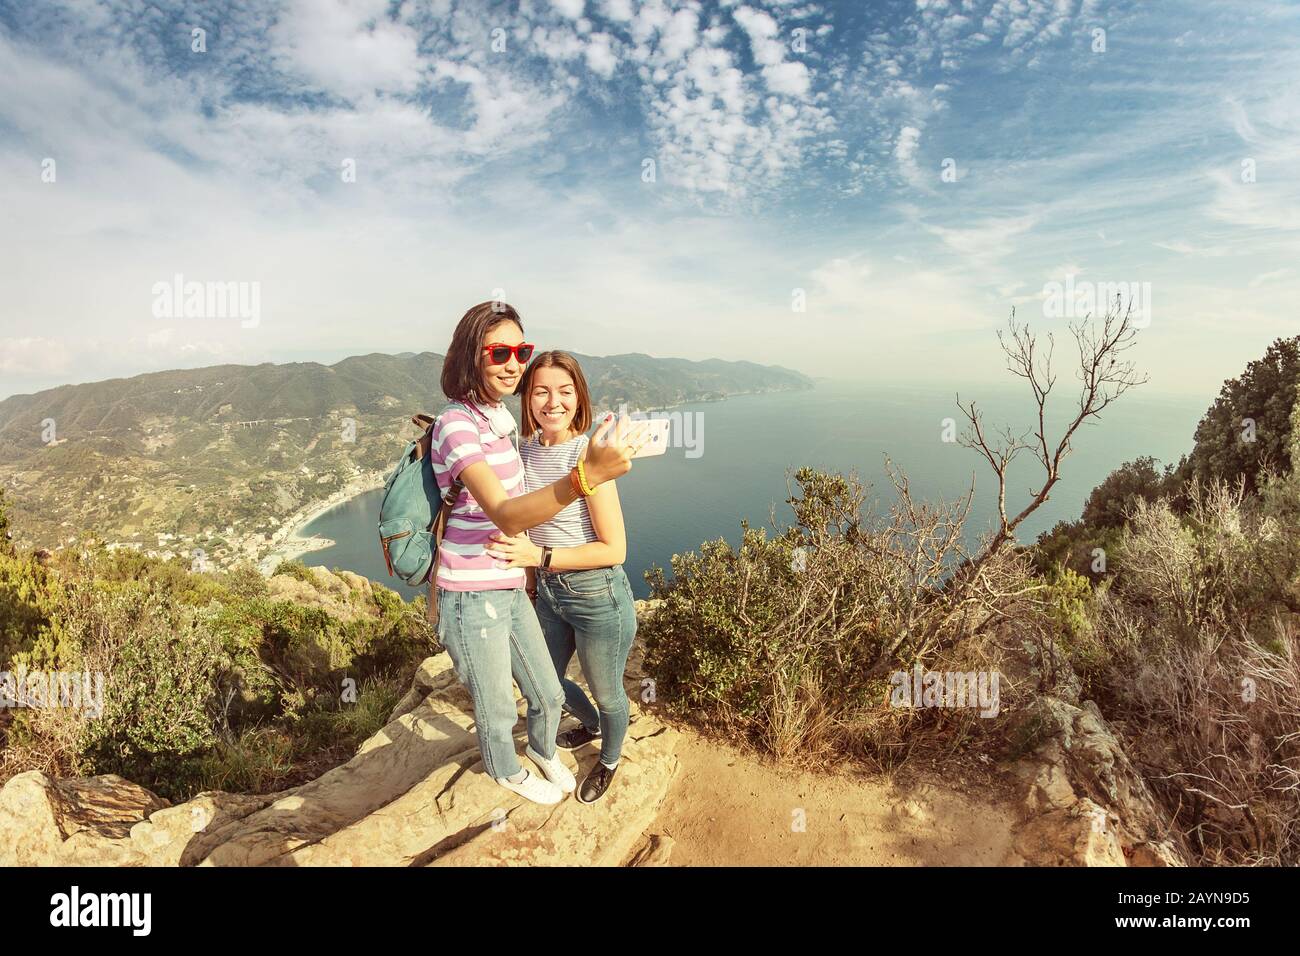 Heureux amis les touristes apprécient la vue sur le paysage marin et prennent selfie ensemble à Cinque Terre, Italie Banque D'Images